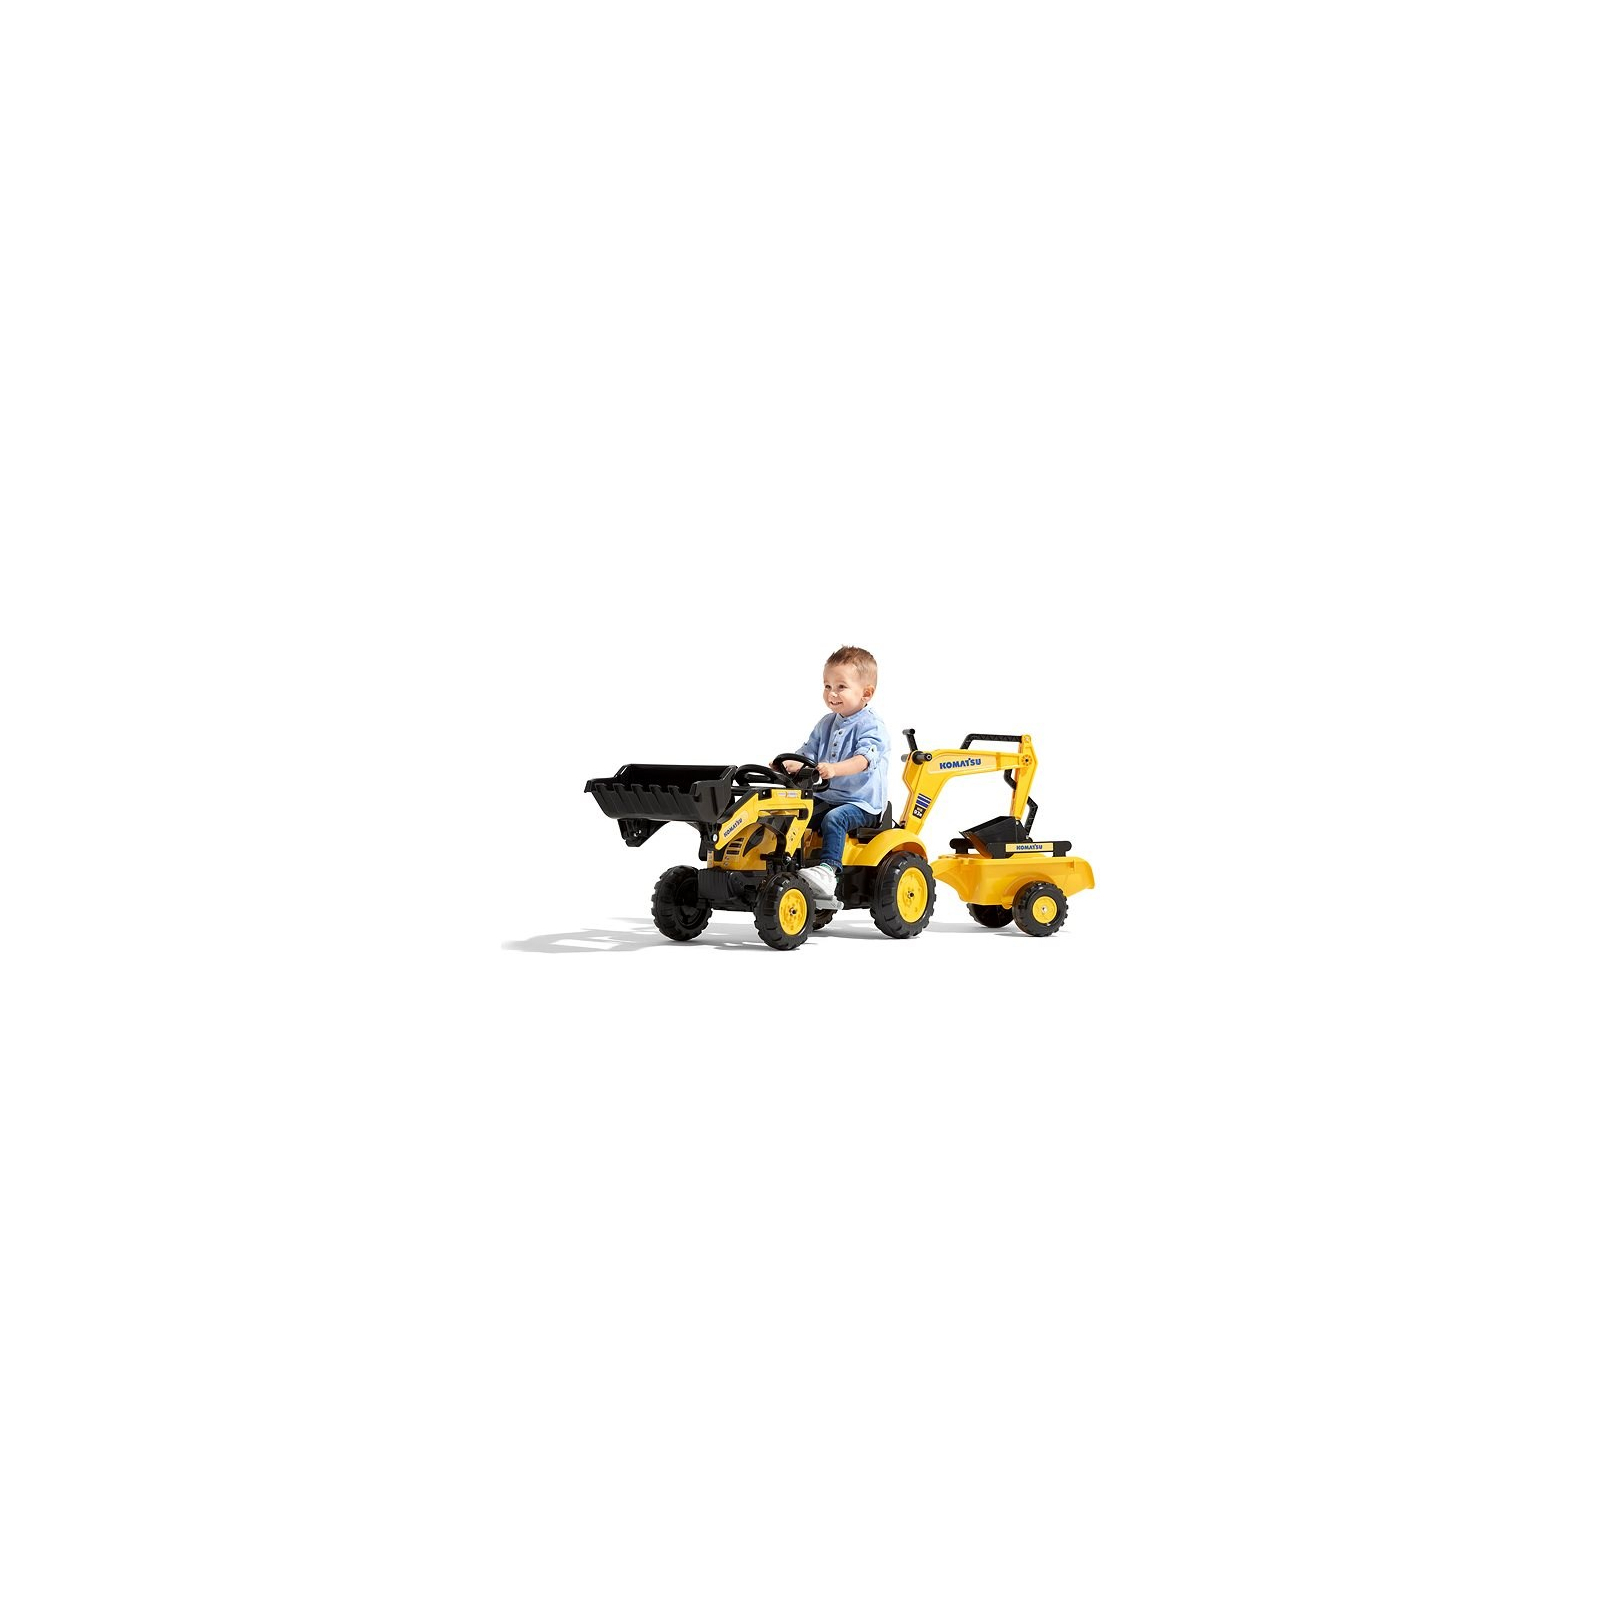 Веломобиль Falk Komatsu трактор на педалях с прицепом, передним и задним ковшом Желтый (2076N) изображение 3